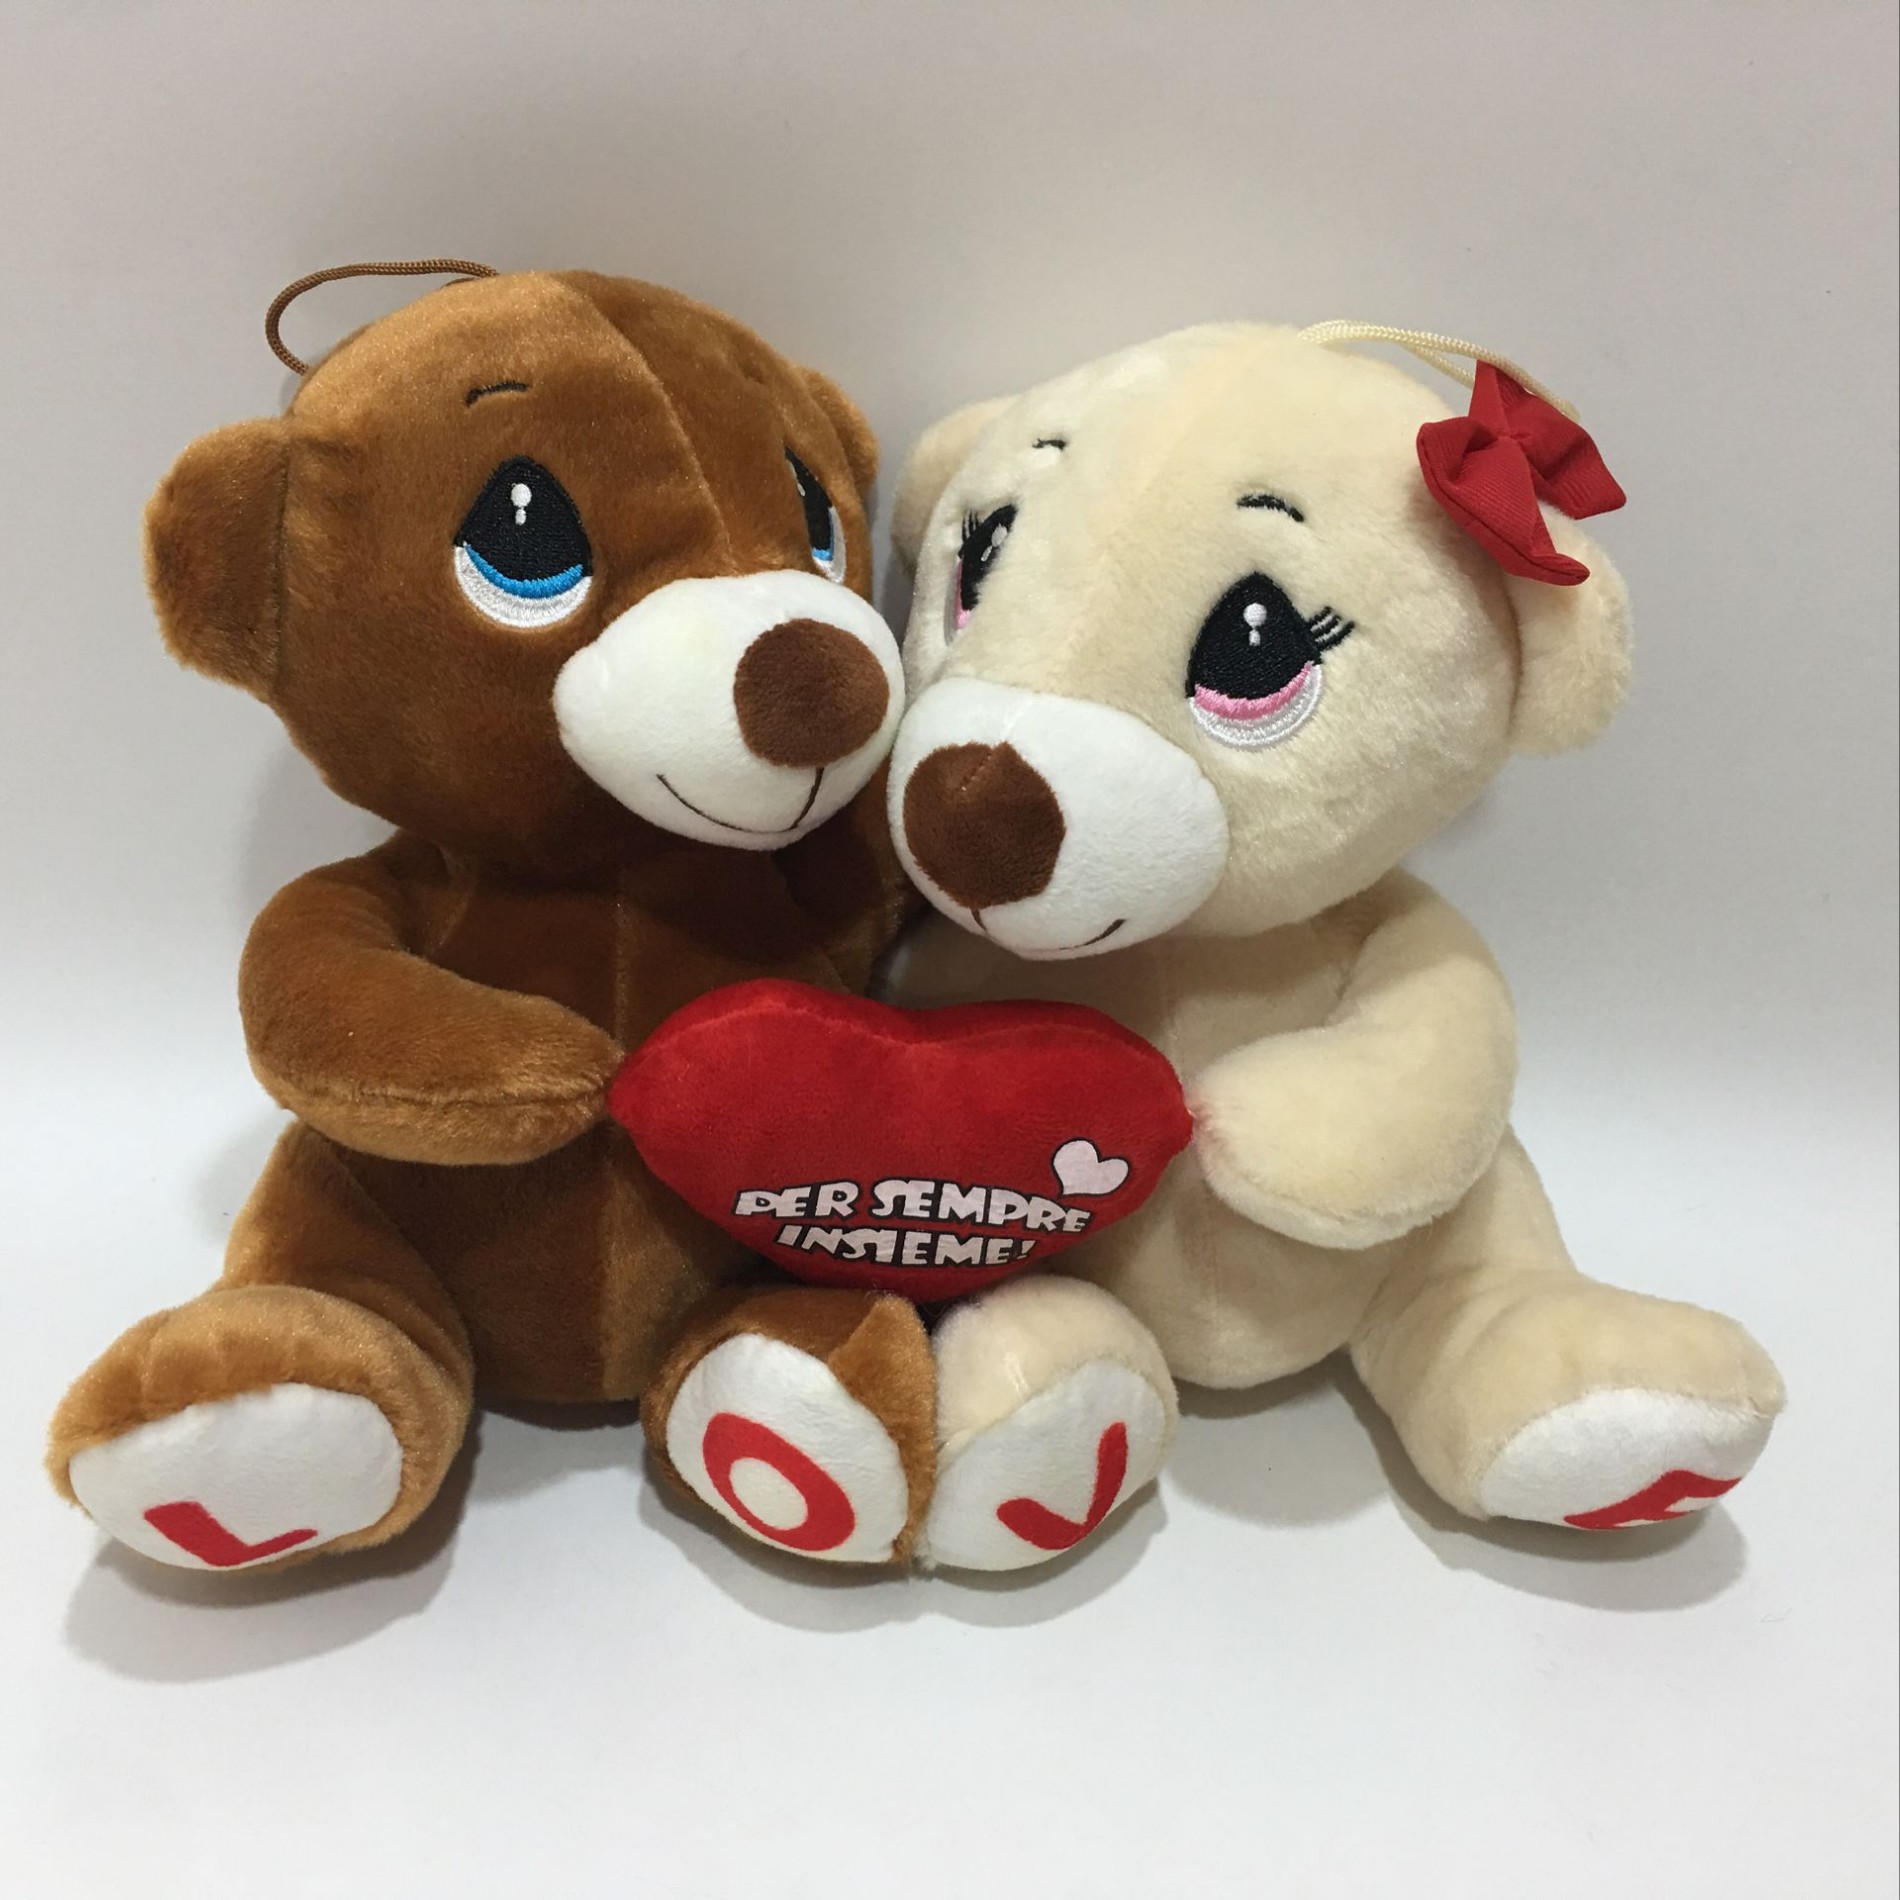 valentines cuddly toys